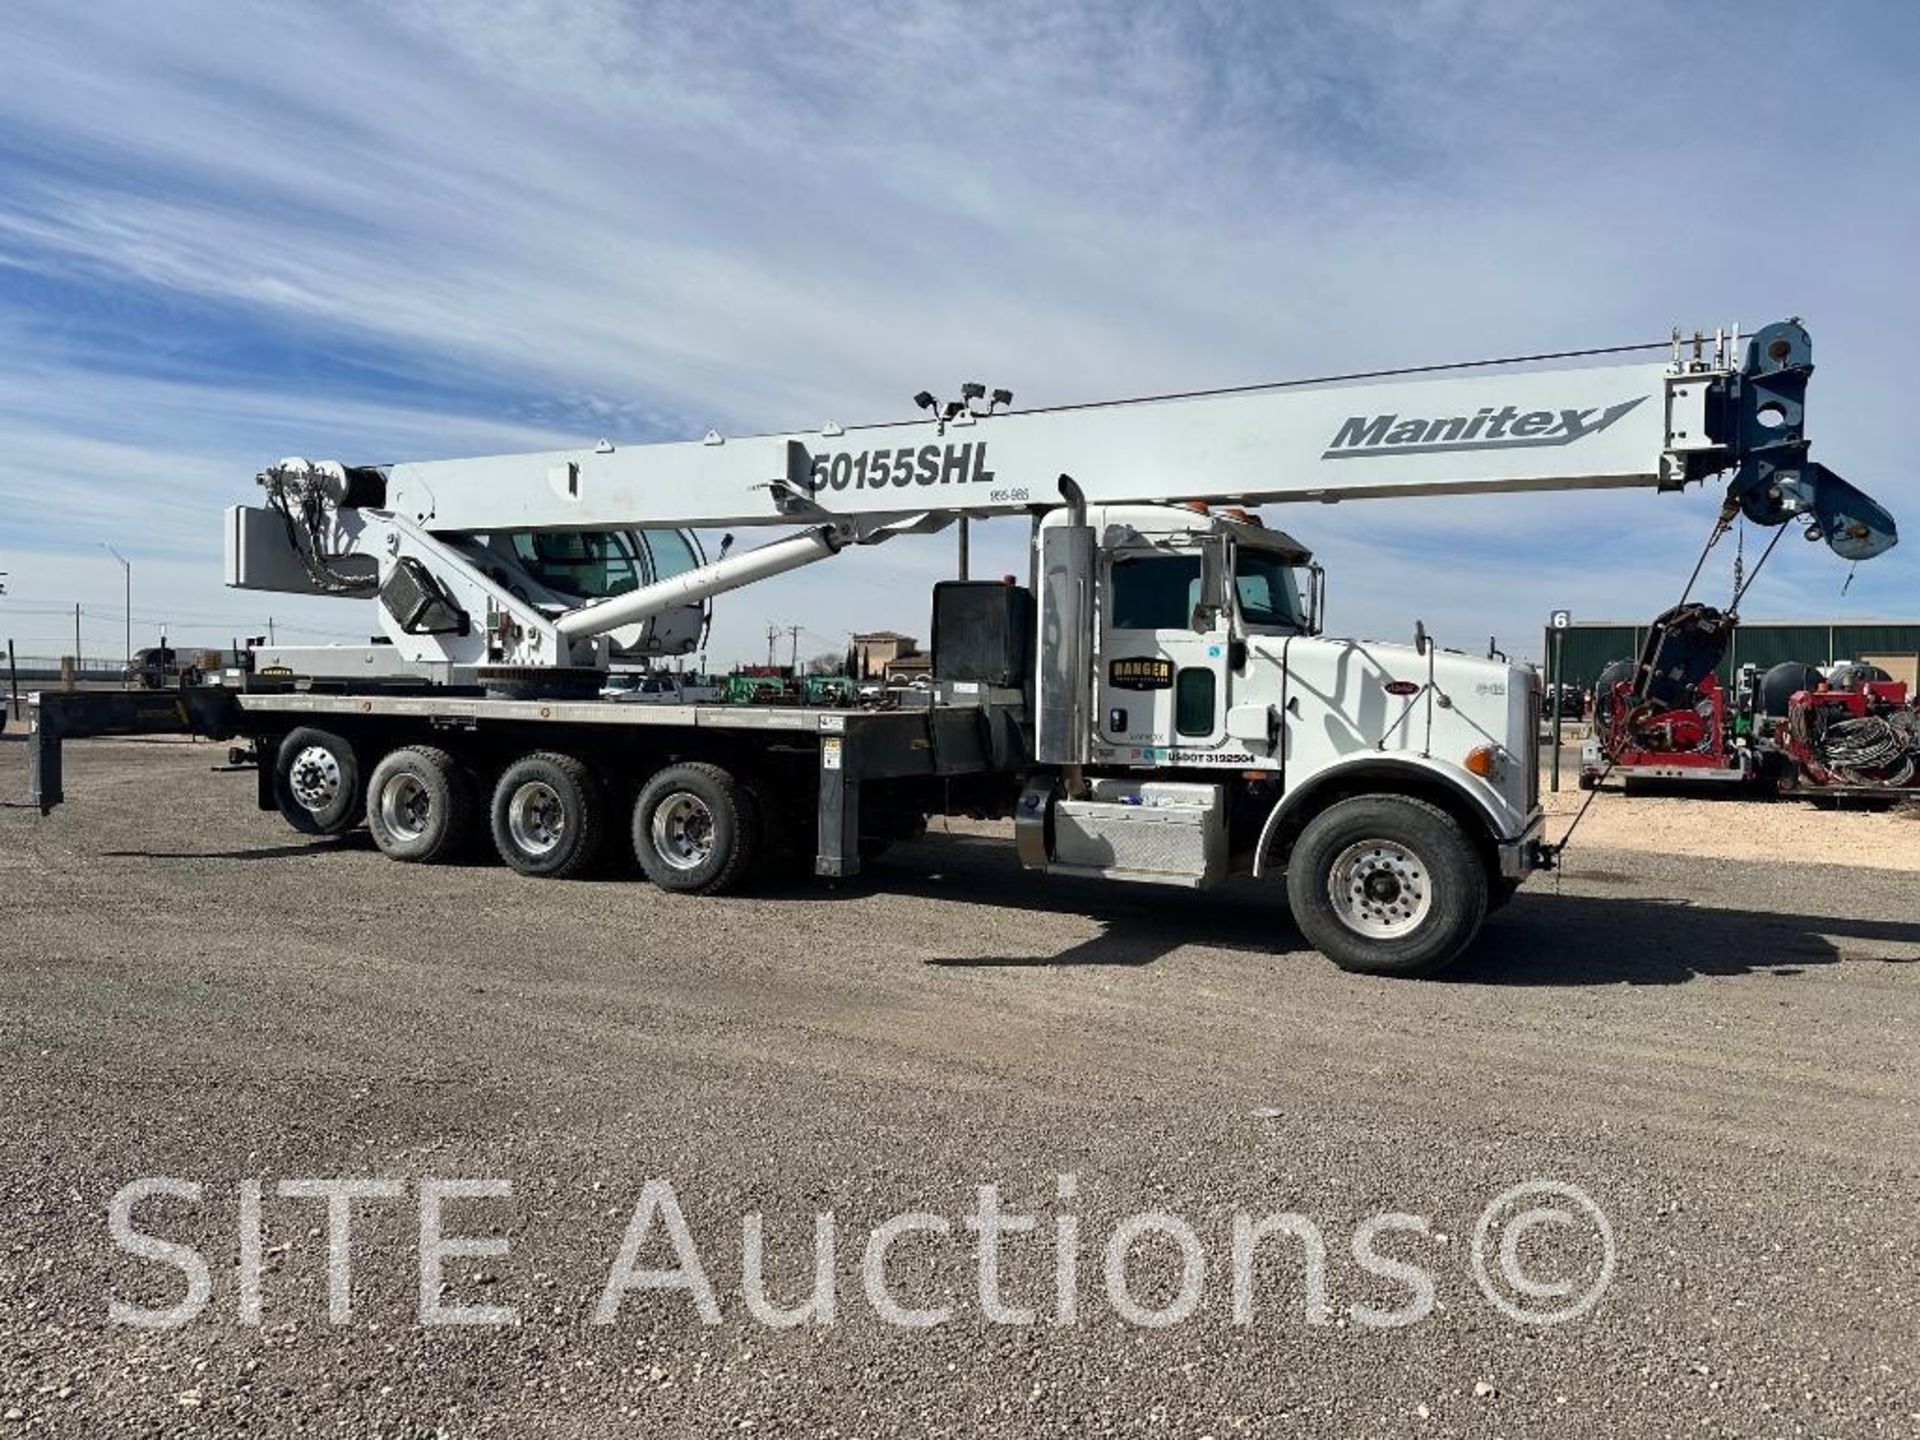 2014 Peterbilt 365 Quad/A Crane Truck w/ Manitex 50155SHL Crane - Image 3 of 33